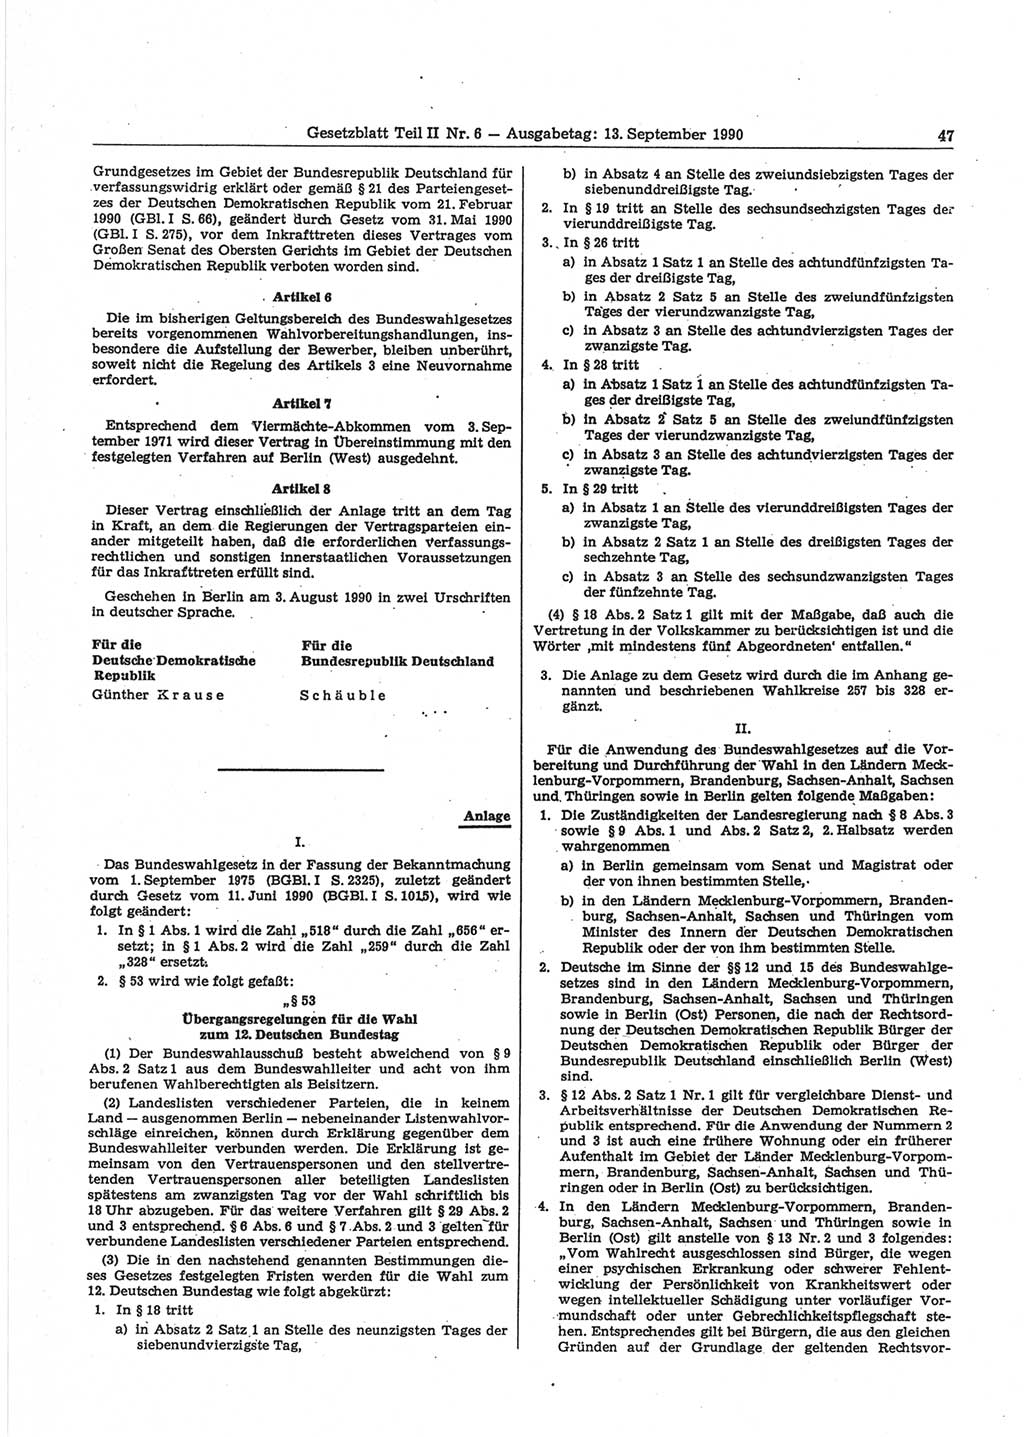 Gesetzblatt (GBl.) der Deutschen Demokratischen Republik (DDR) Teil ⅠⅠ 1990, Seite 47 (GBl. DDR ⅠⅠ 1990, S. 47)